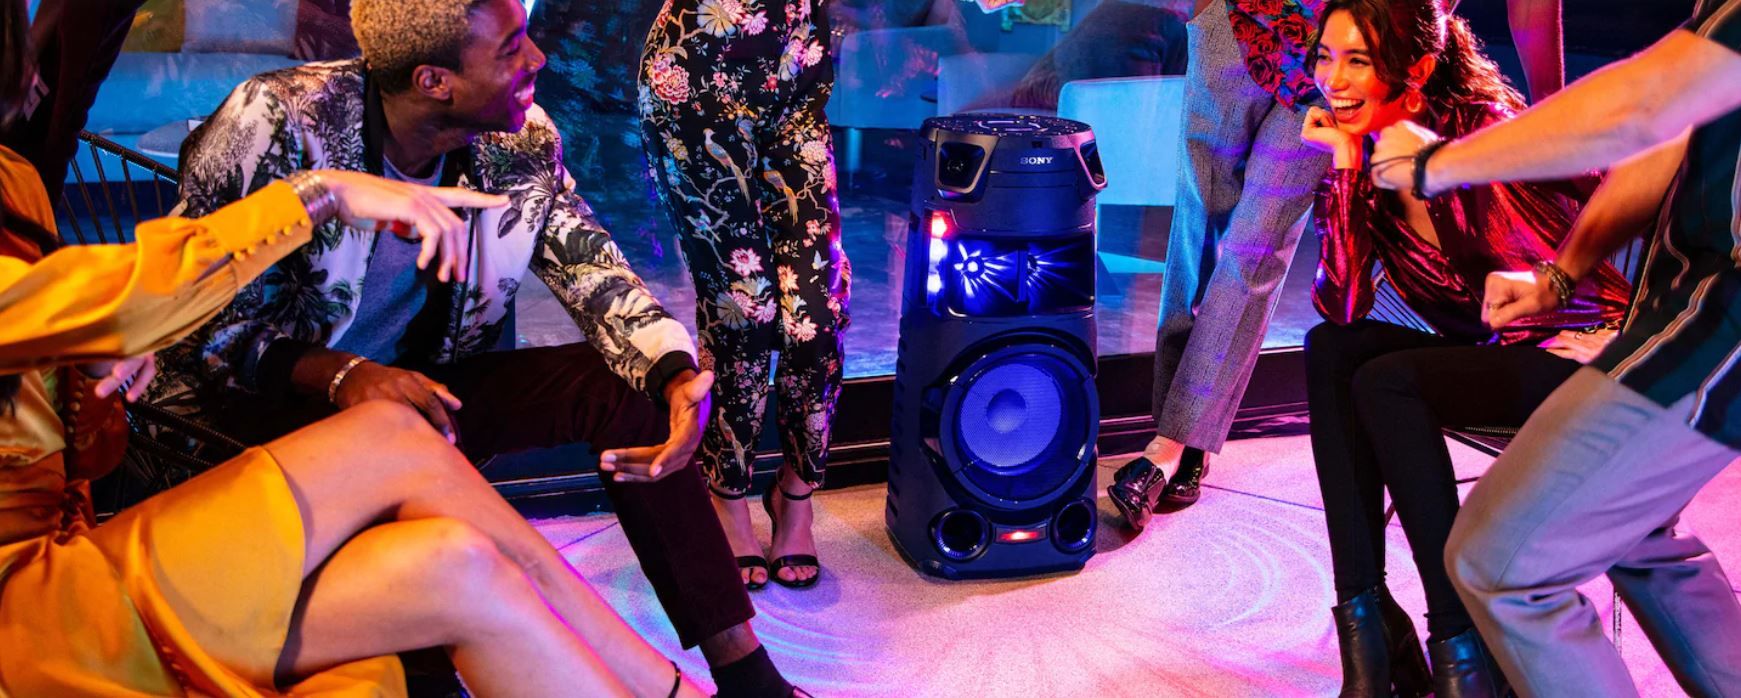  párty reproduktor sony mhc-v43d karaoke fiestable ovládanie hlasom gitarový jack upevnenie v repro stojane svetelné efekty 